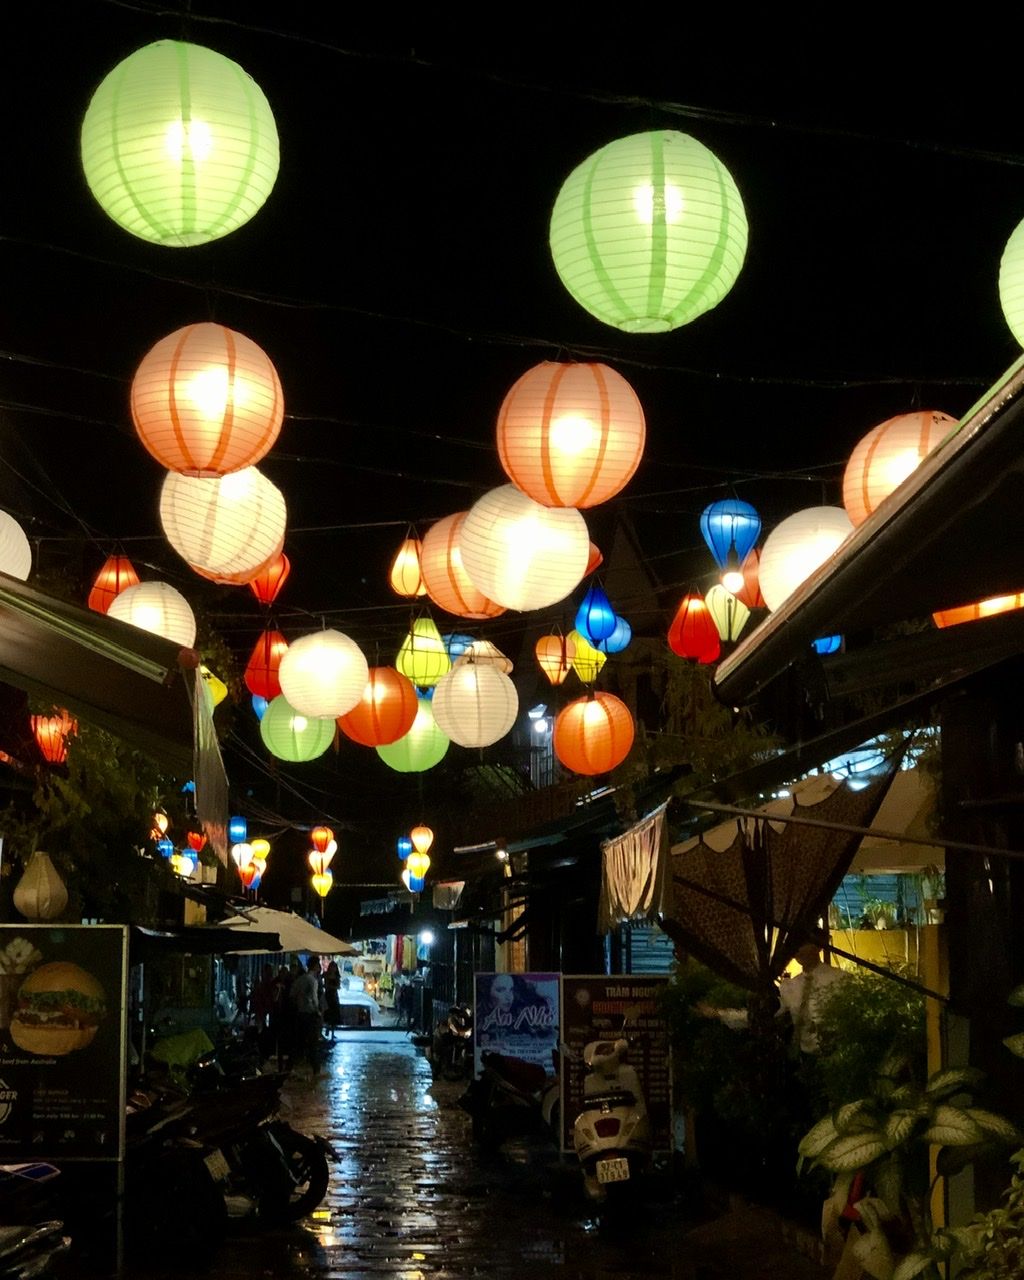 Lanterns illuminated in the streets